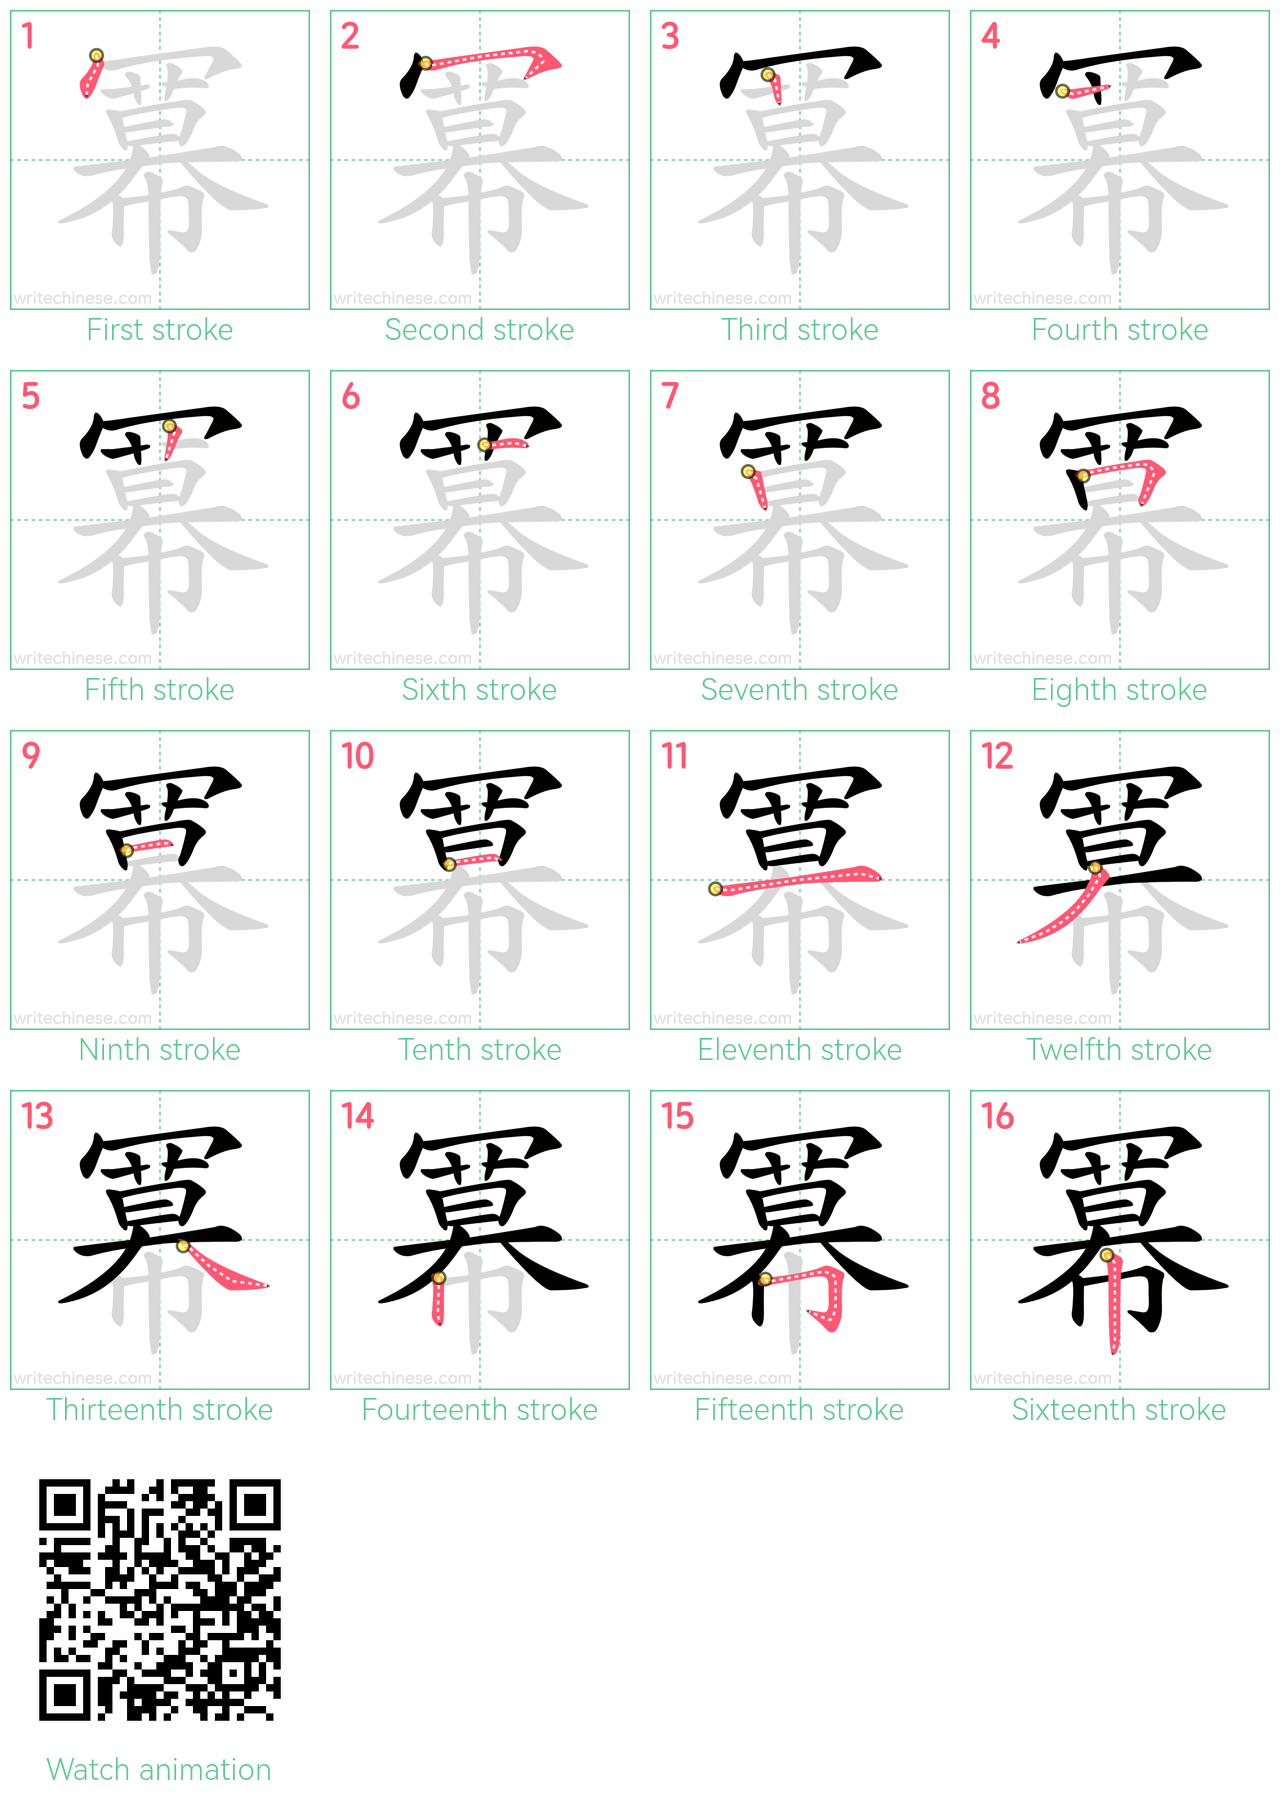 冪 step-by-step stroke order diagrams